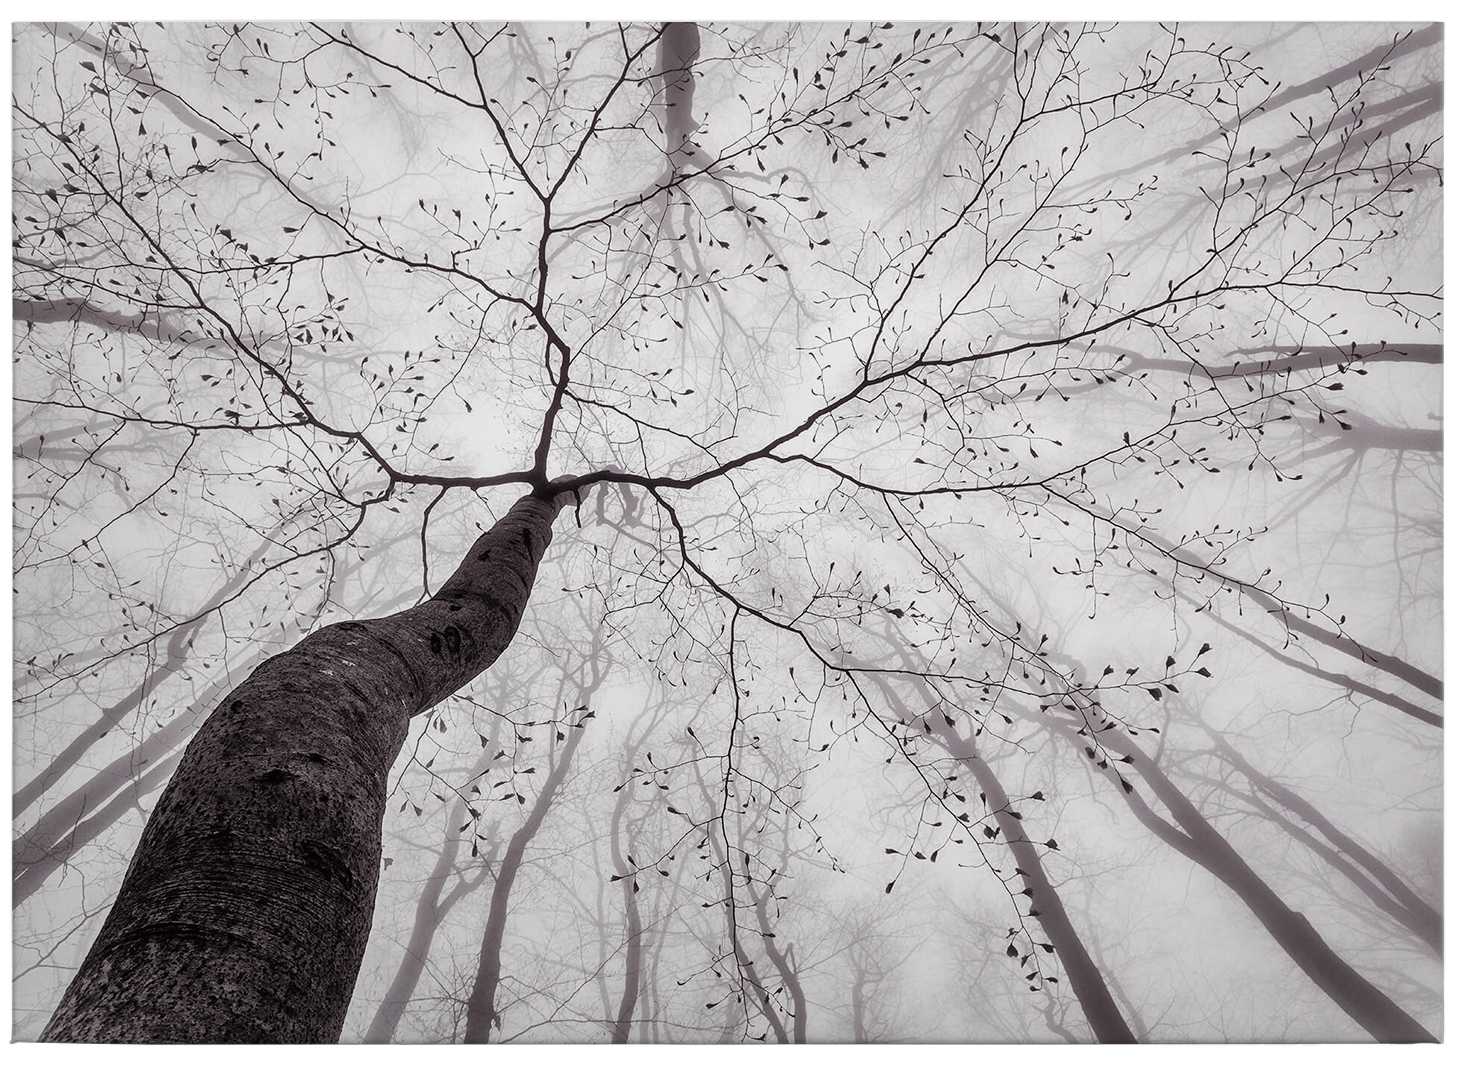             Schwarz-Weiß Leinwandbild Baumspitzen im Nebel – 0,70 m x 0,50 m
        